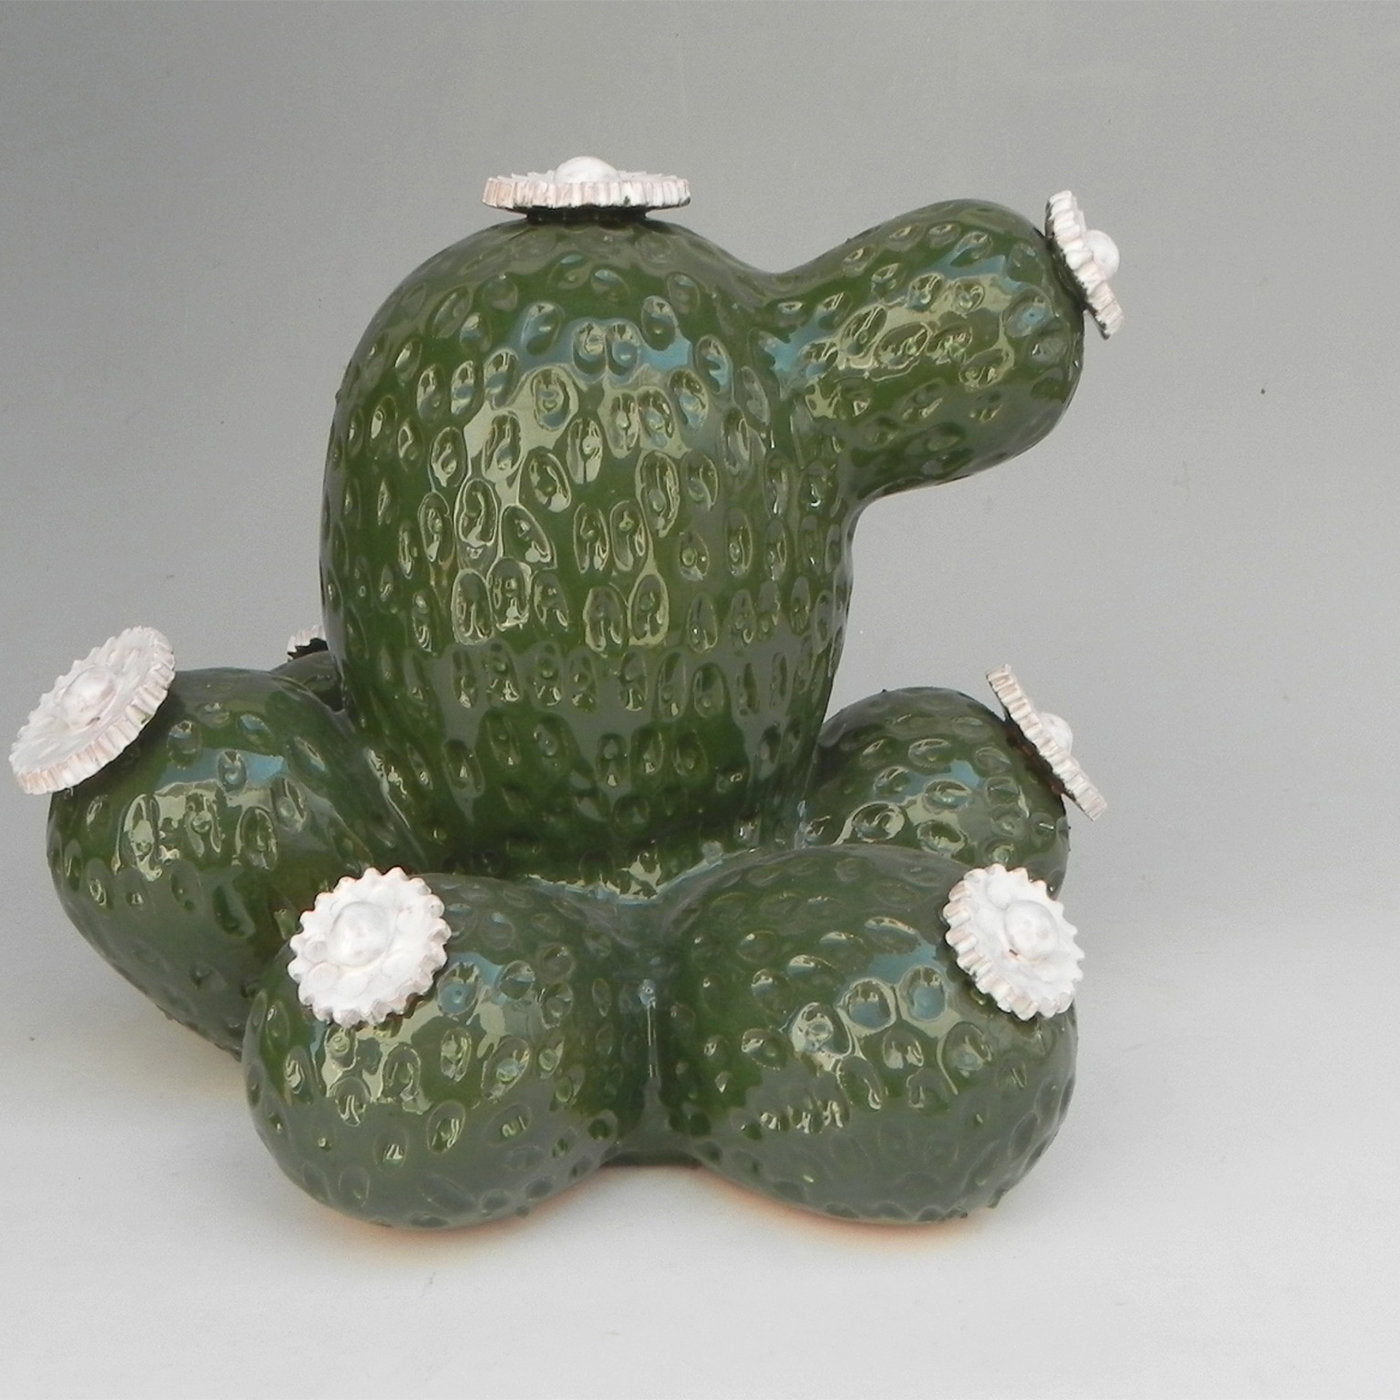 Boulder Avenue Ceramic Cactus Sculpture by Tullio Mazzotti - Alternative view 4